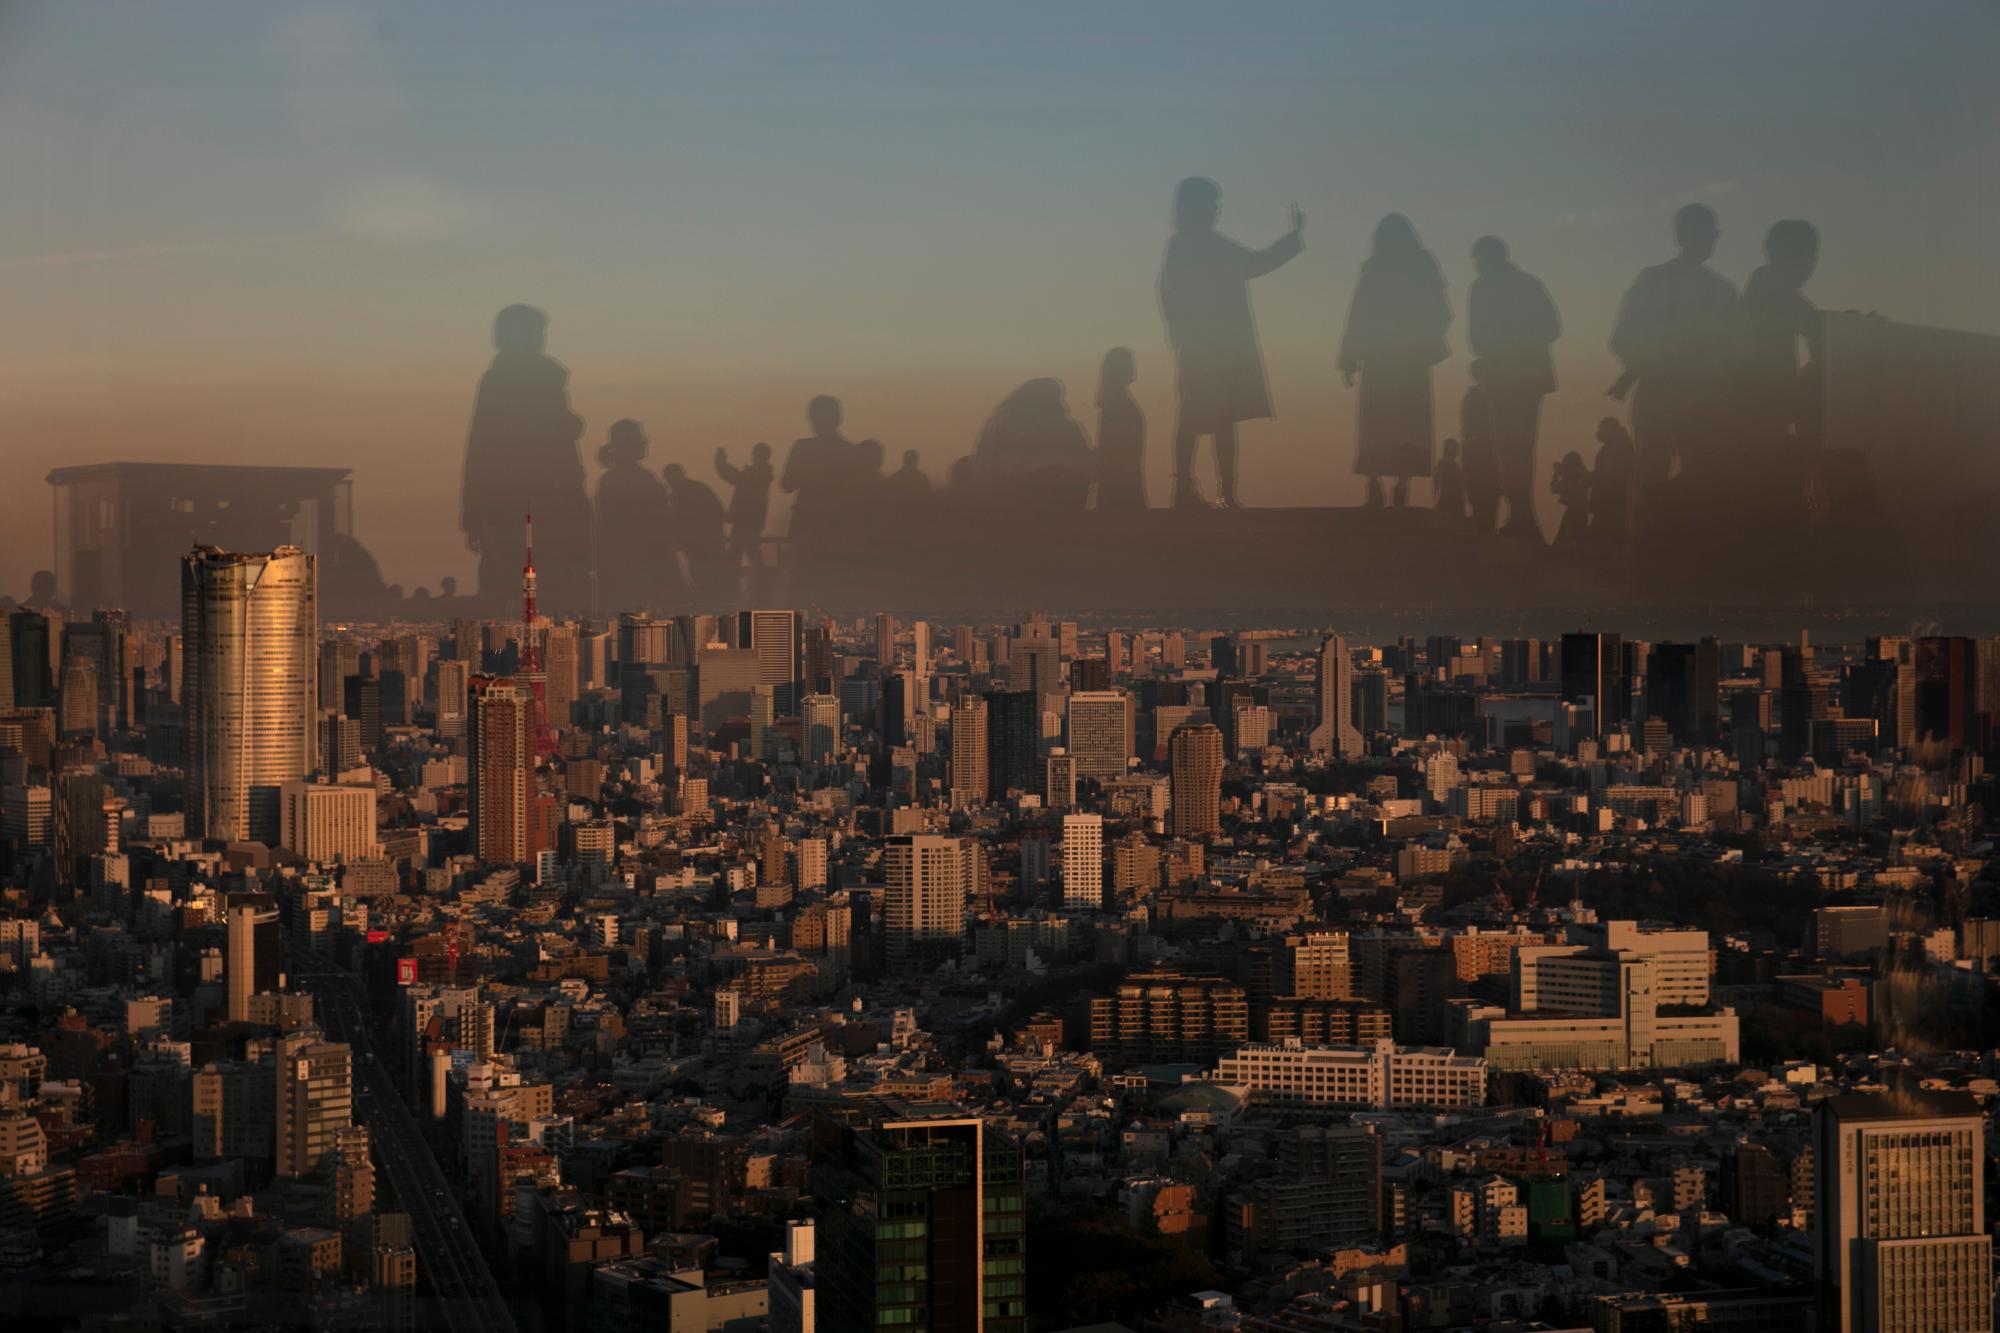  Ver Tokio desde el cielo: Shibuya Sky